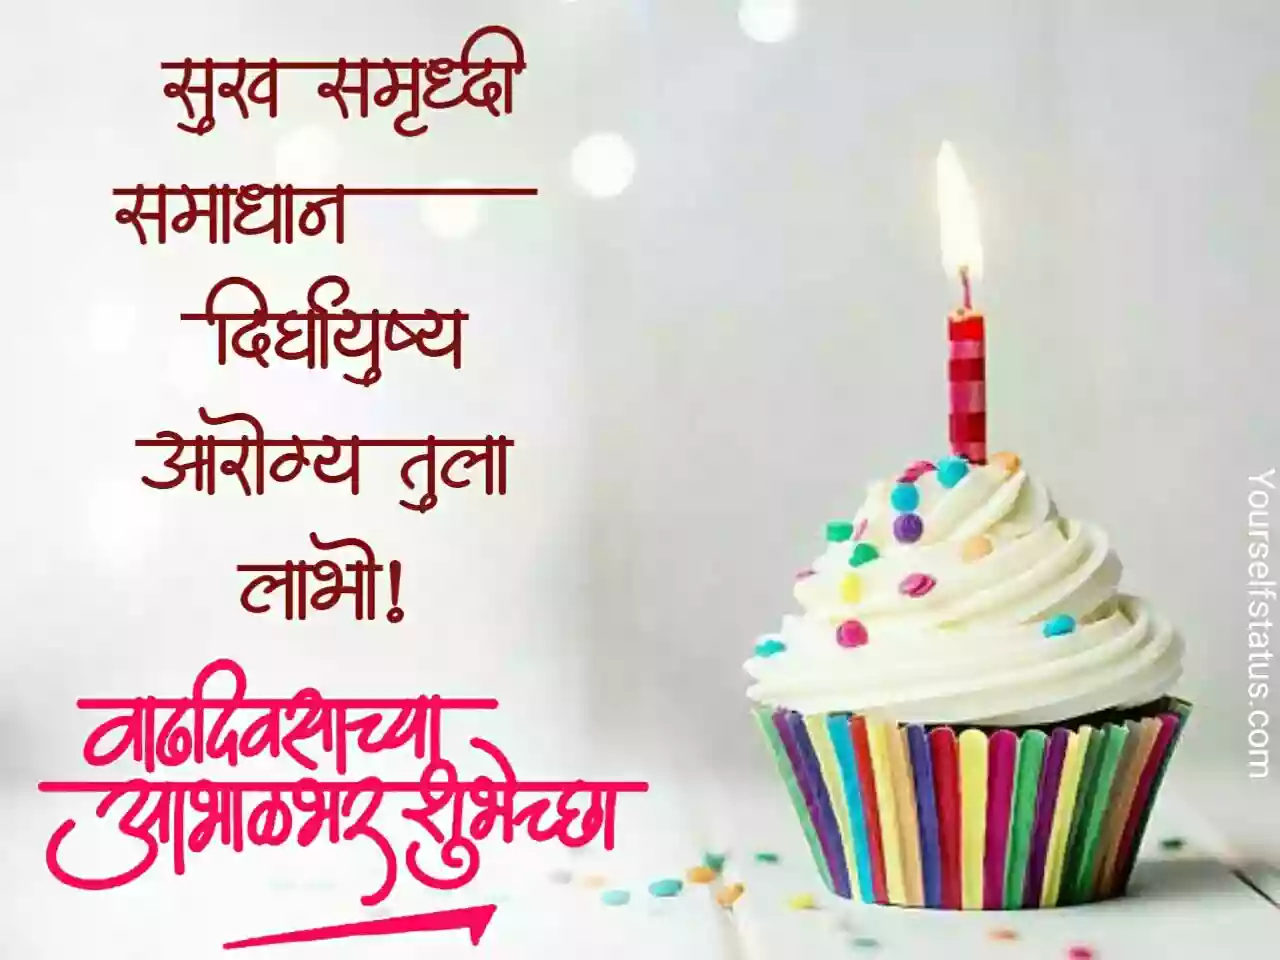 Happy birthday wishes in marathi